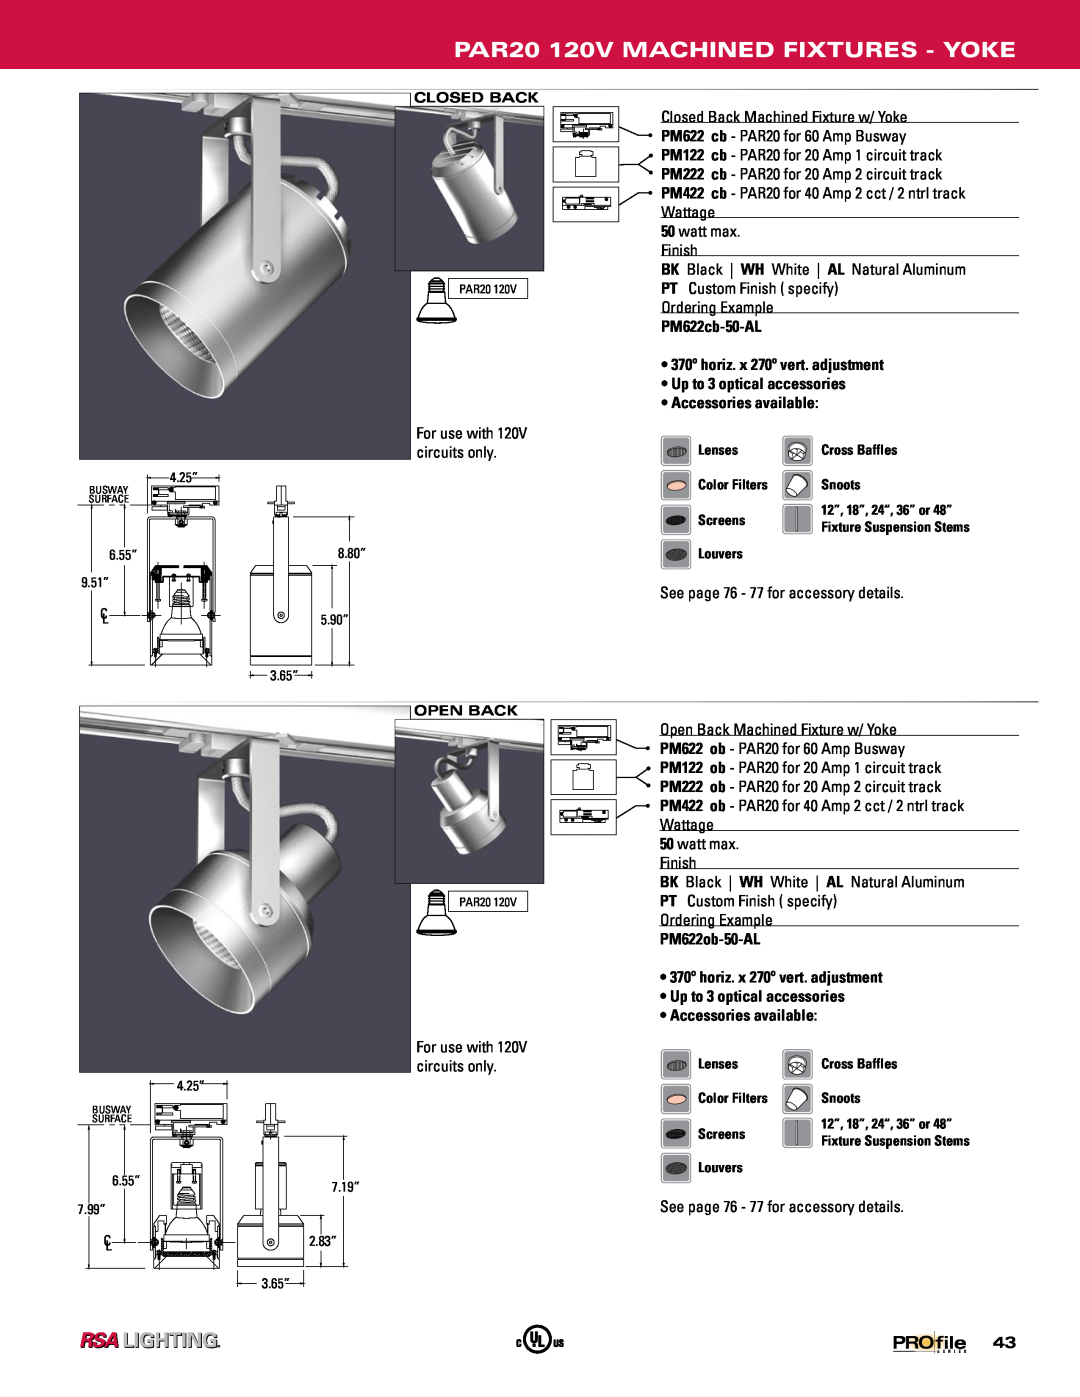 Profile Machined Aluminum Fixtures manual PAR20 120V MACHINED FIXTURES - YOKE, PM622cb-50-AL, PM622ob-50-AL 